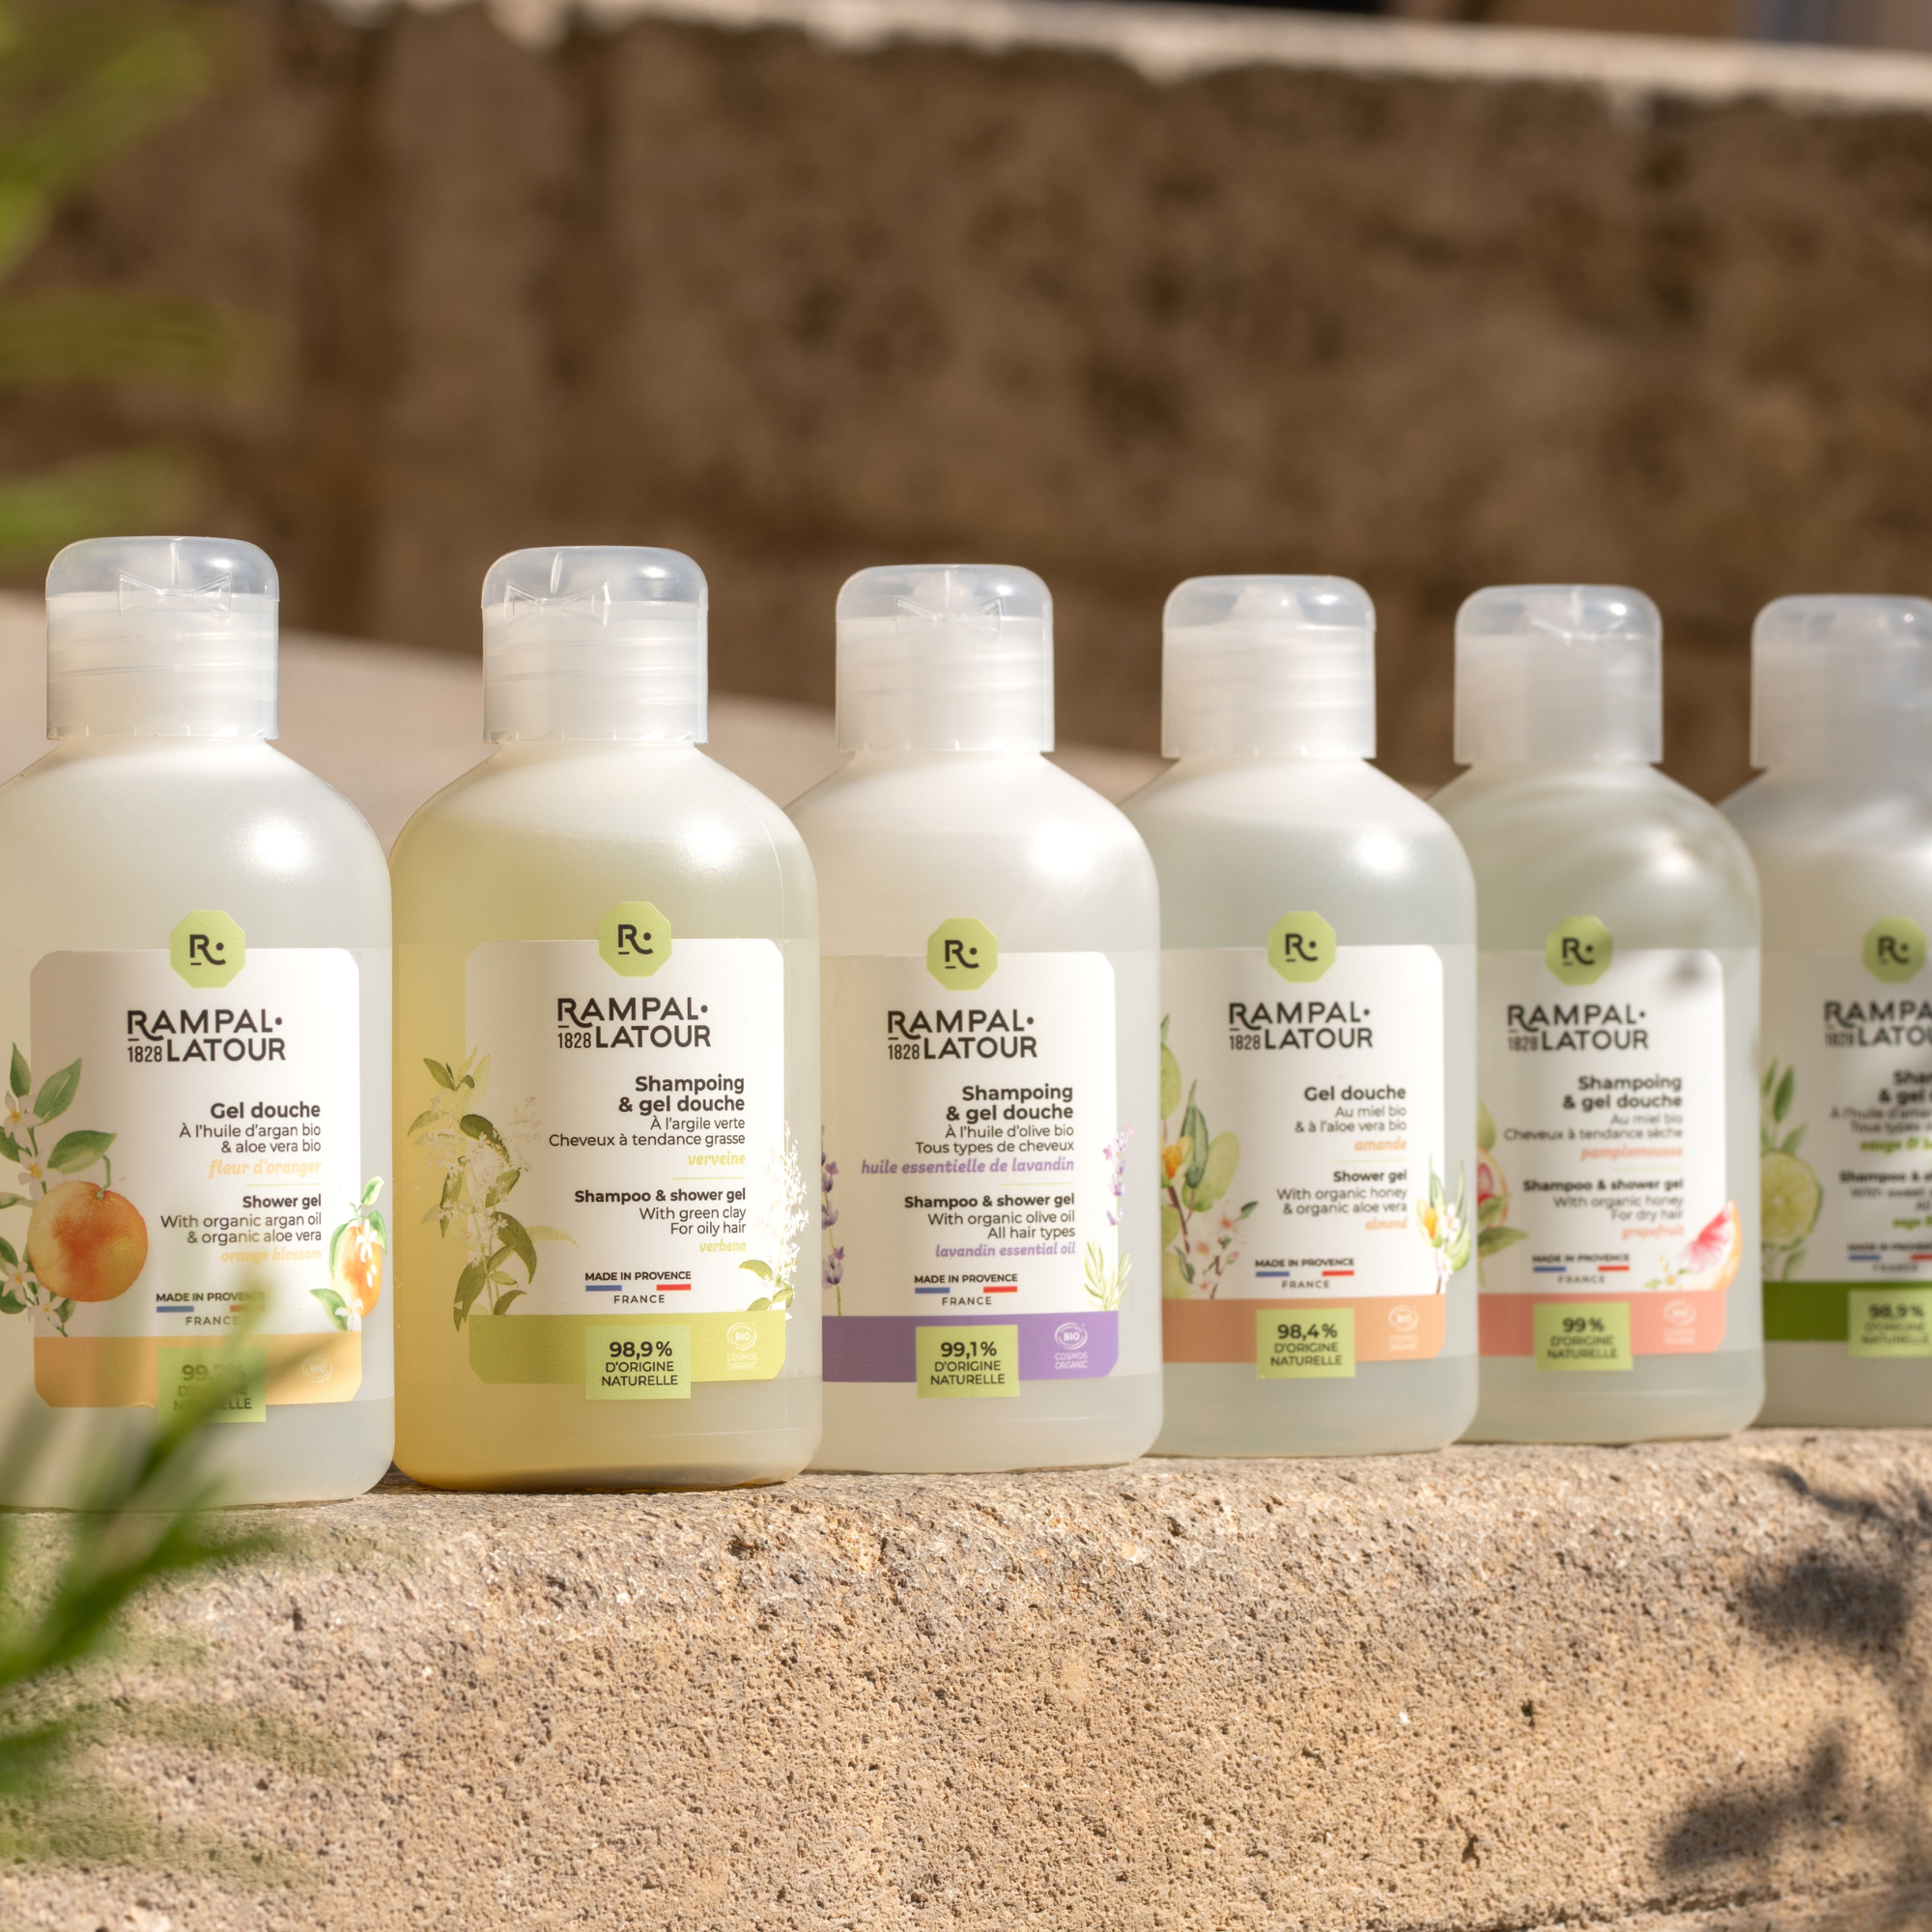 Shower shampoo certified organic Rose de Damas 250ml - Cosmos Organic